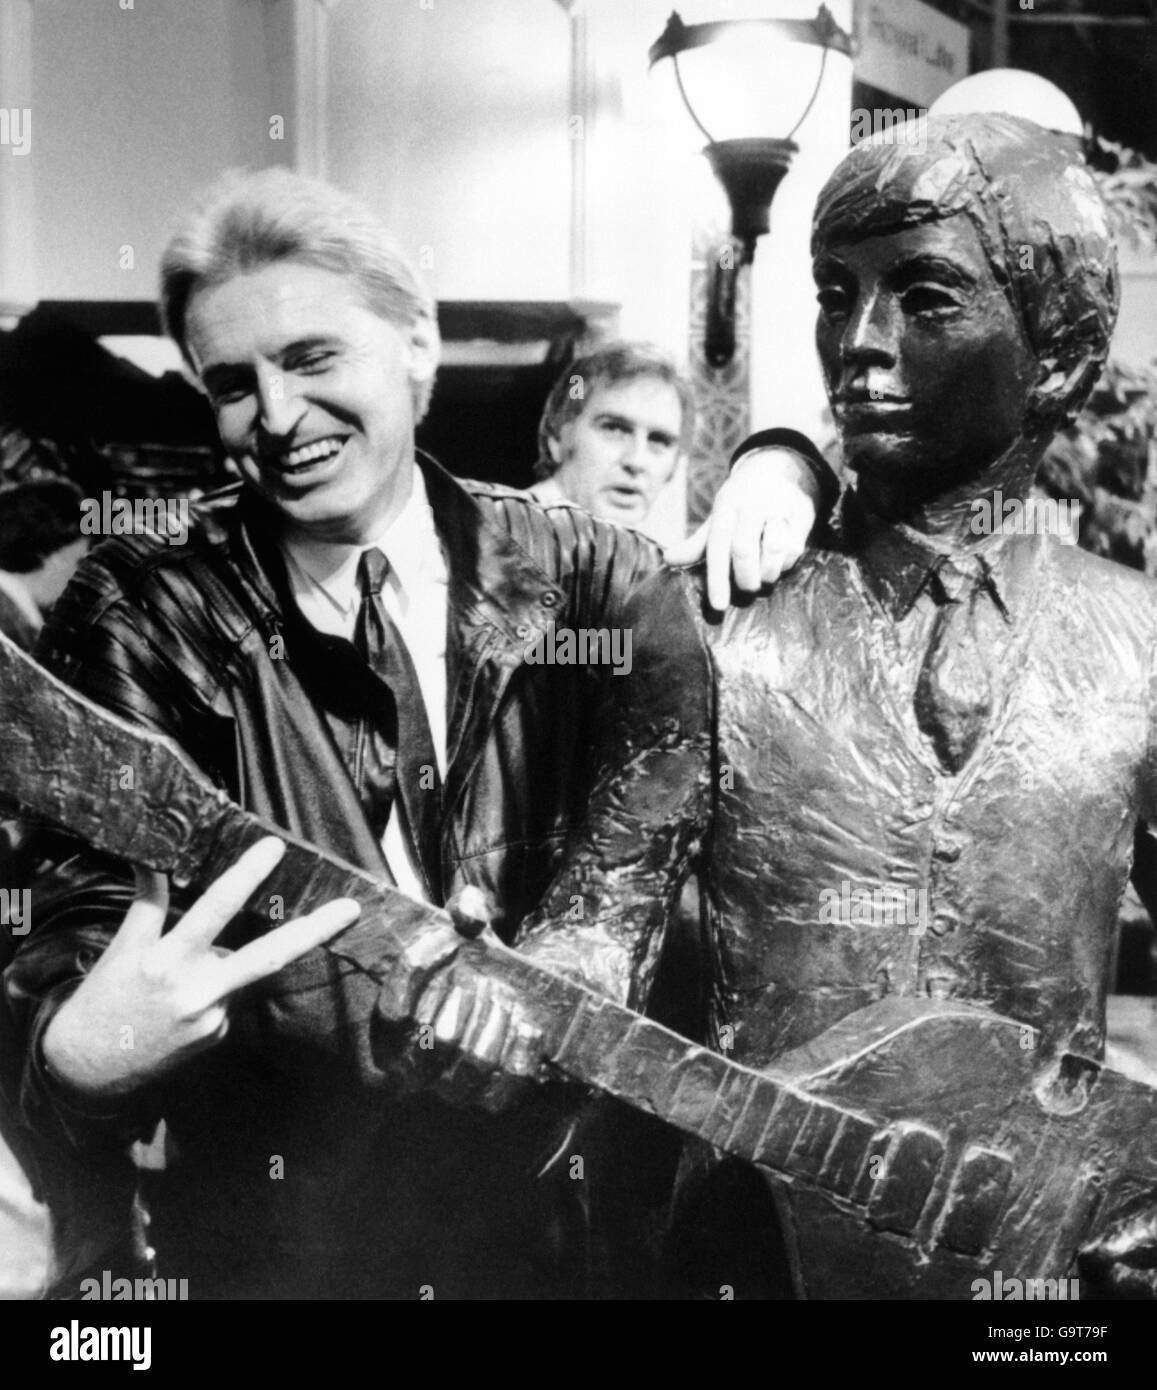 Mick McGear fratello dell'ex Beatle Paul McCartney diventa parte di un duetto con la figura di Paul. Una sezione della scultura dei Beatles svelata nelle Cavern Walks, Liverpool Foto Stock